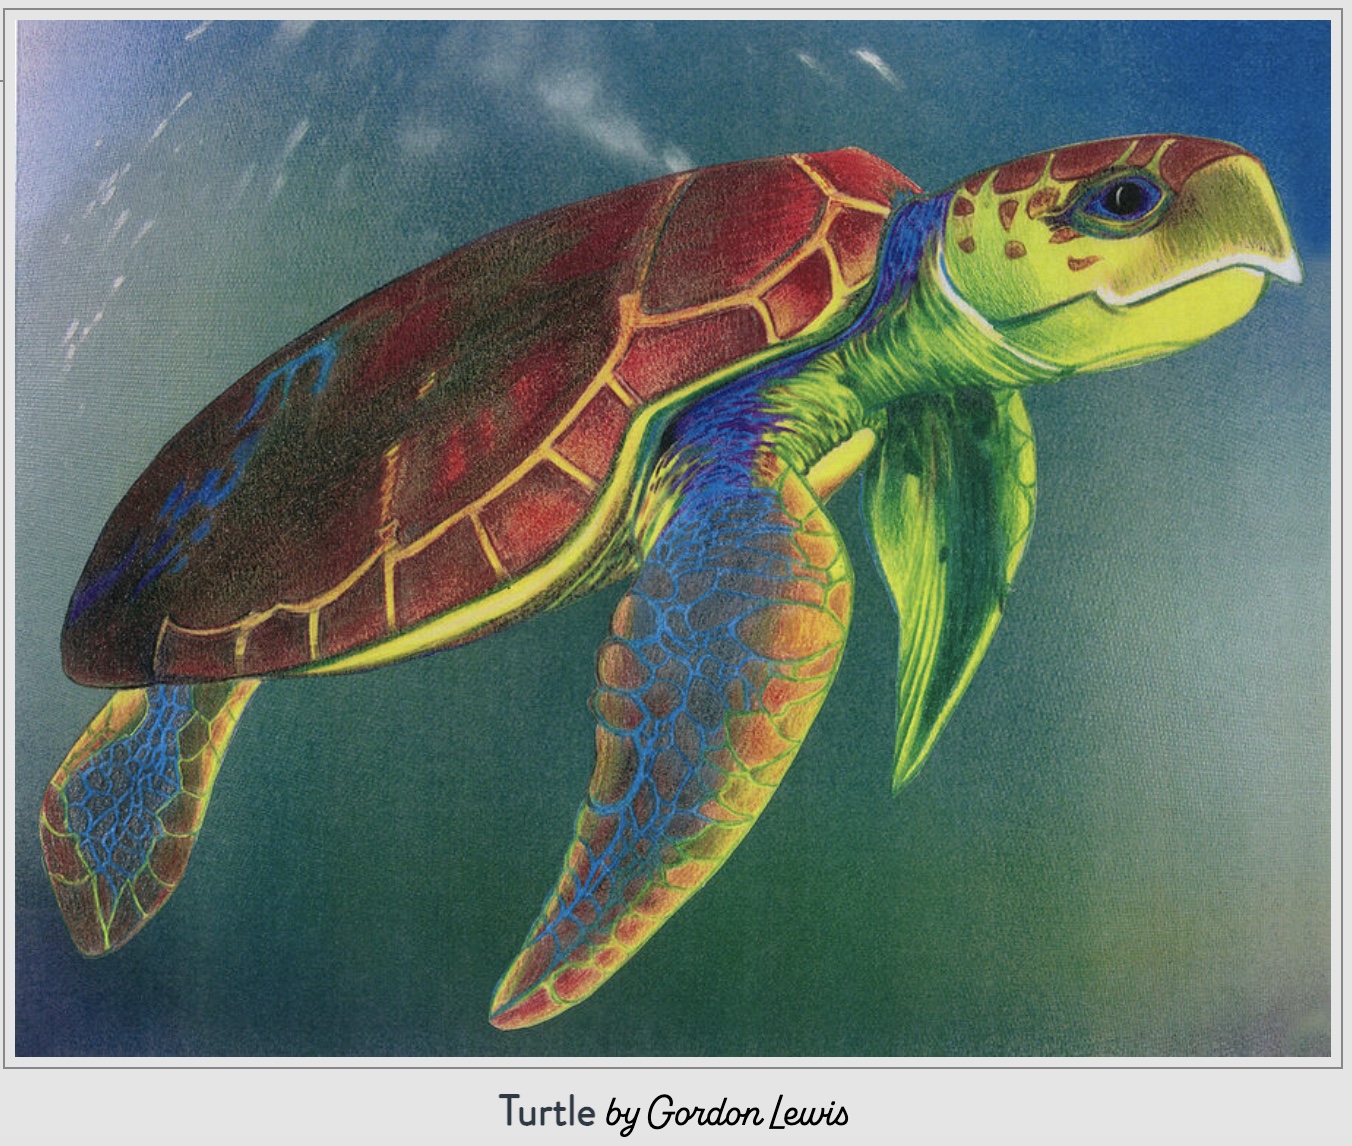 Turtle by Gordon Lewis